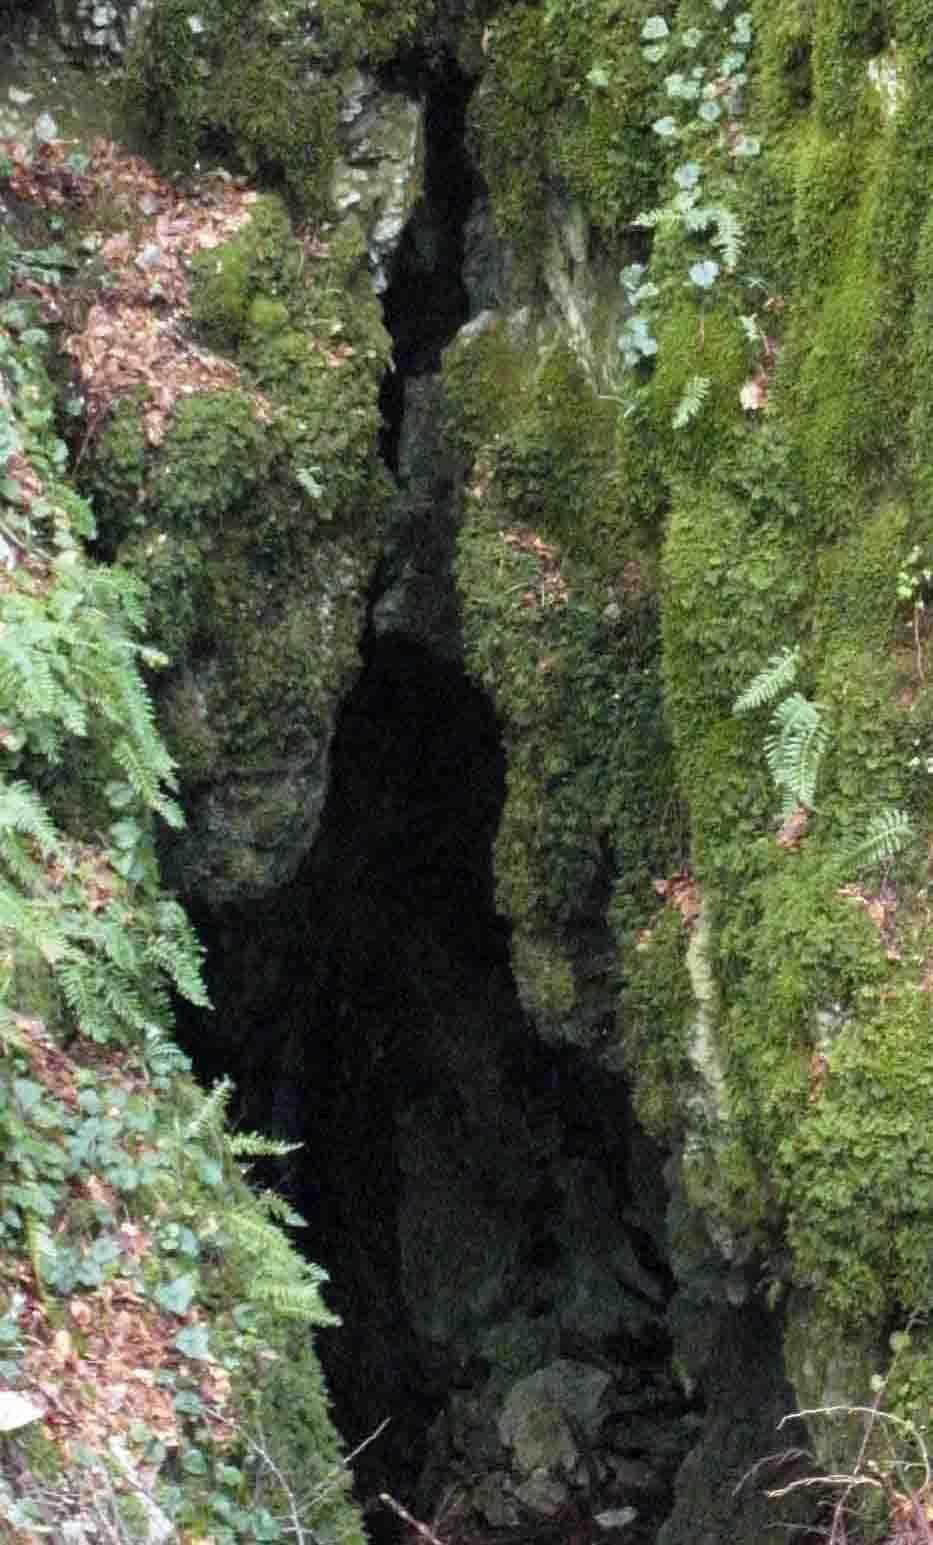 L'Ingresso della "Grotta